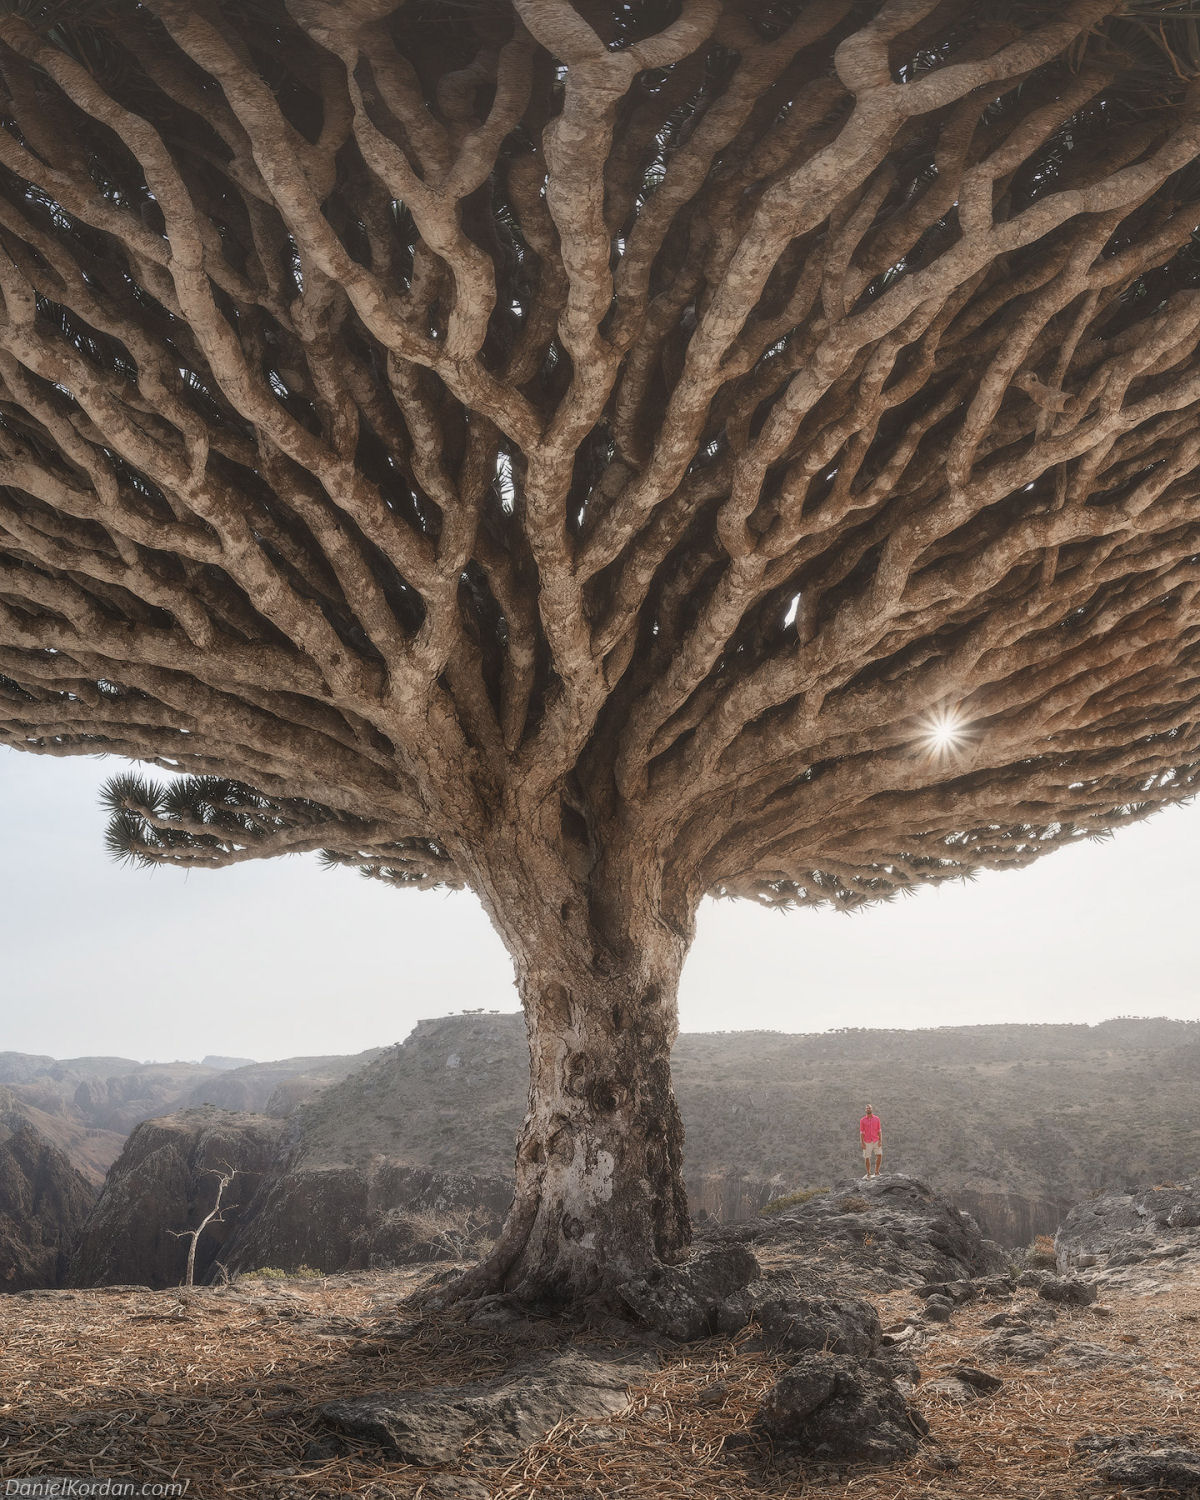 Fotosérie incrível registra os ramos retorcidos dos dragoeiros de Socotra 08